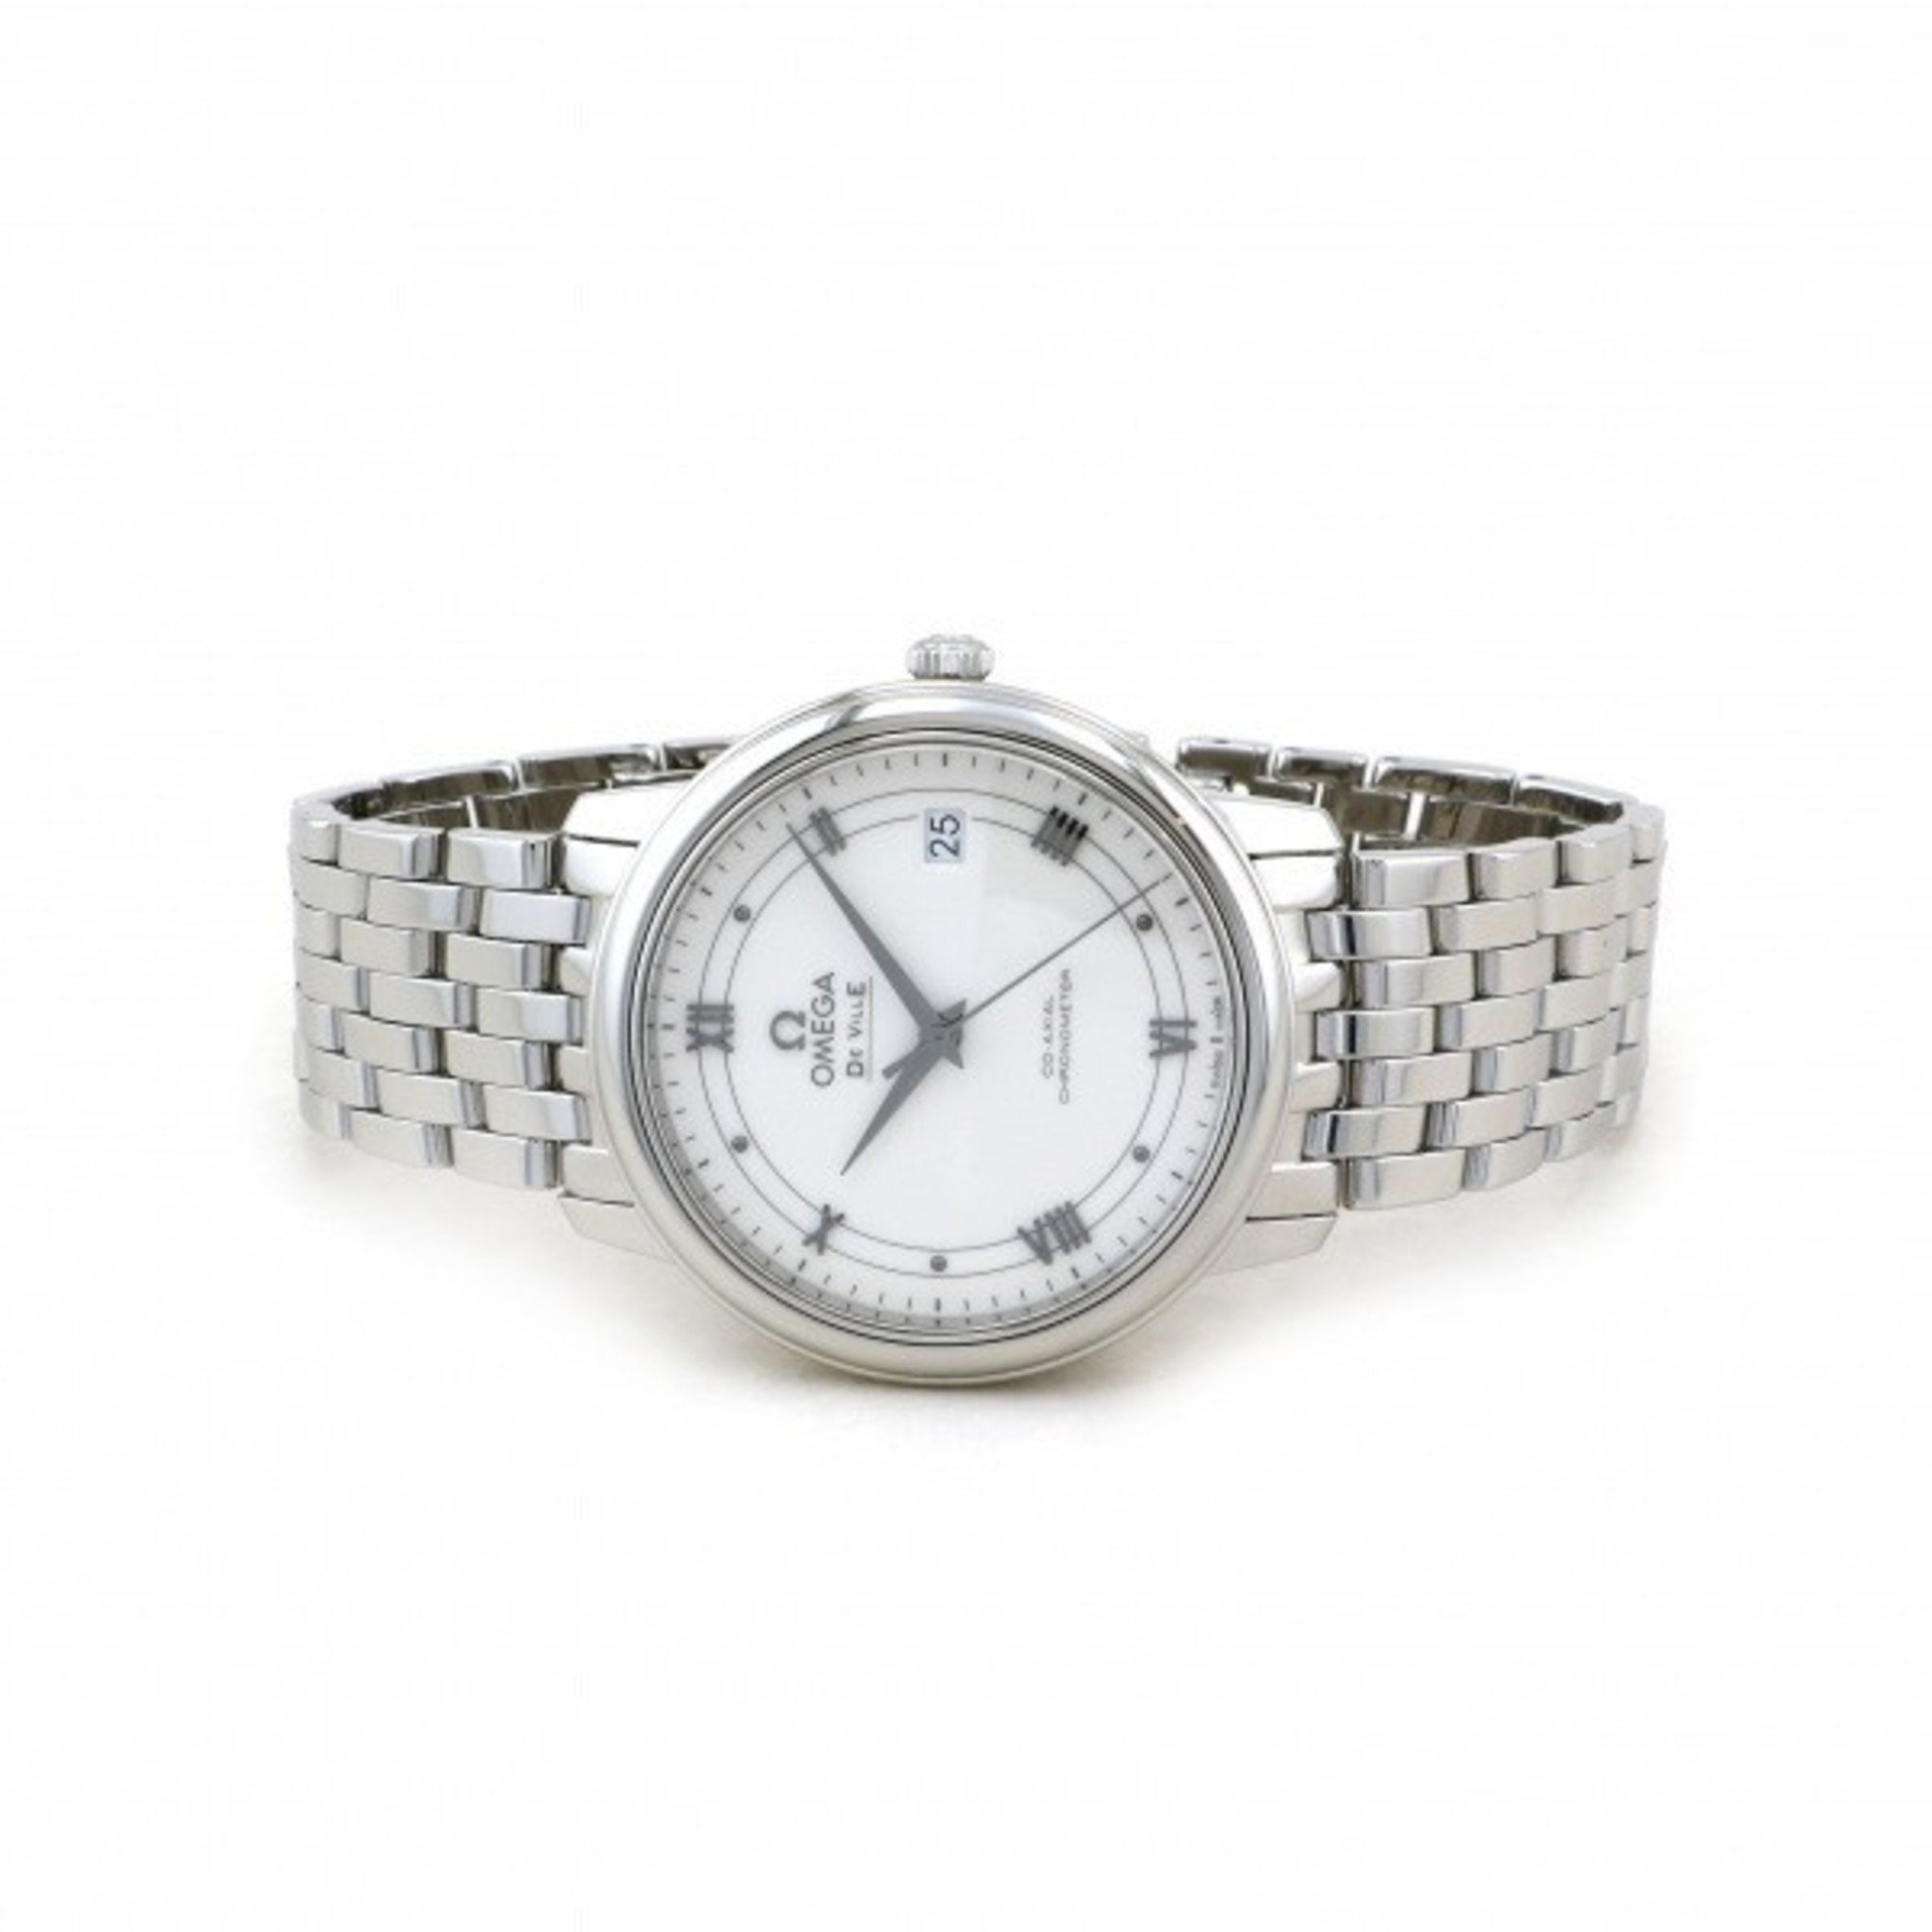 Omega OMEGA De Ville Co-Axial Chronometer 424.10.37.20.04.001 Silver Dial Watch Women's